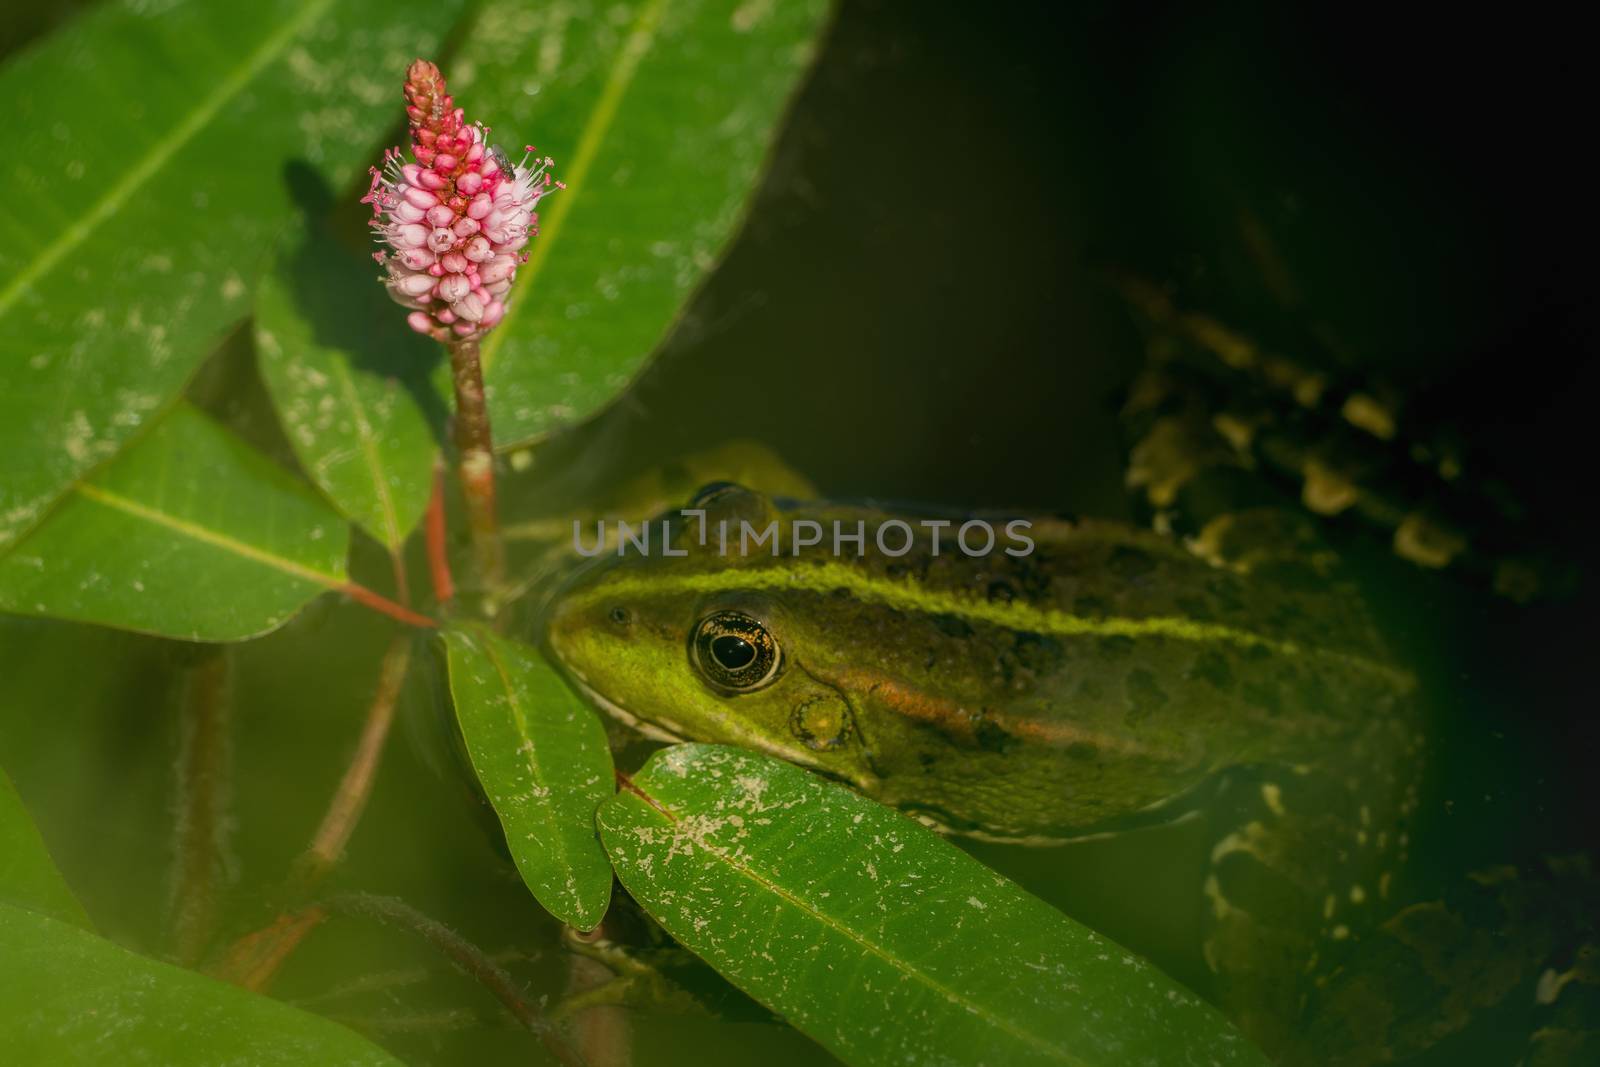 Frog in the water between leaves by sandra_fotodesign